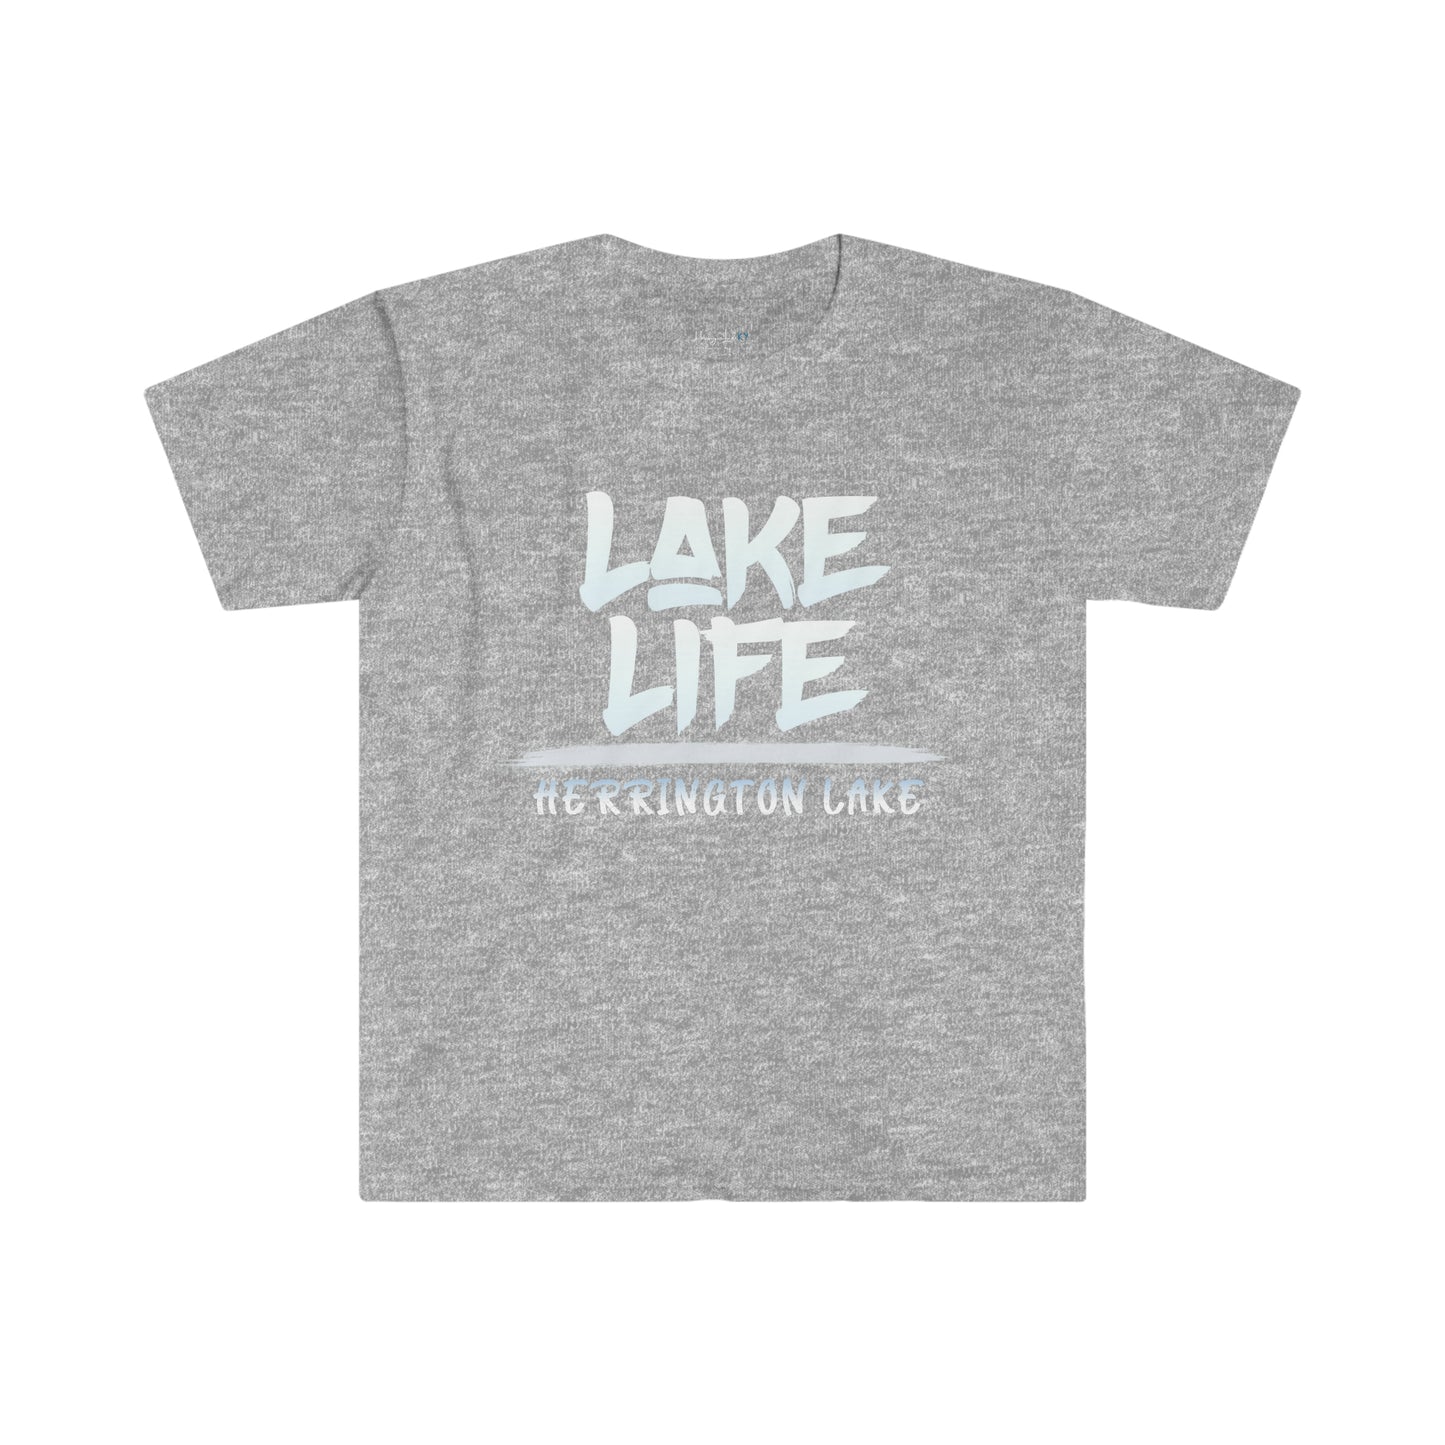 Herrington LAKE LIFE Softstyle T-Shirt